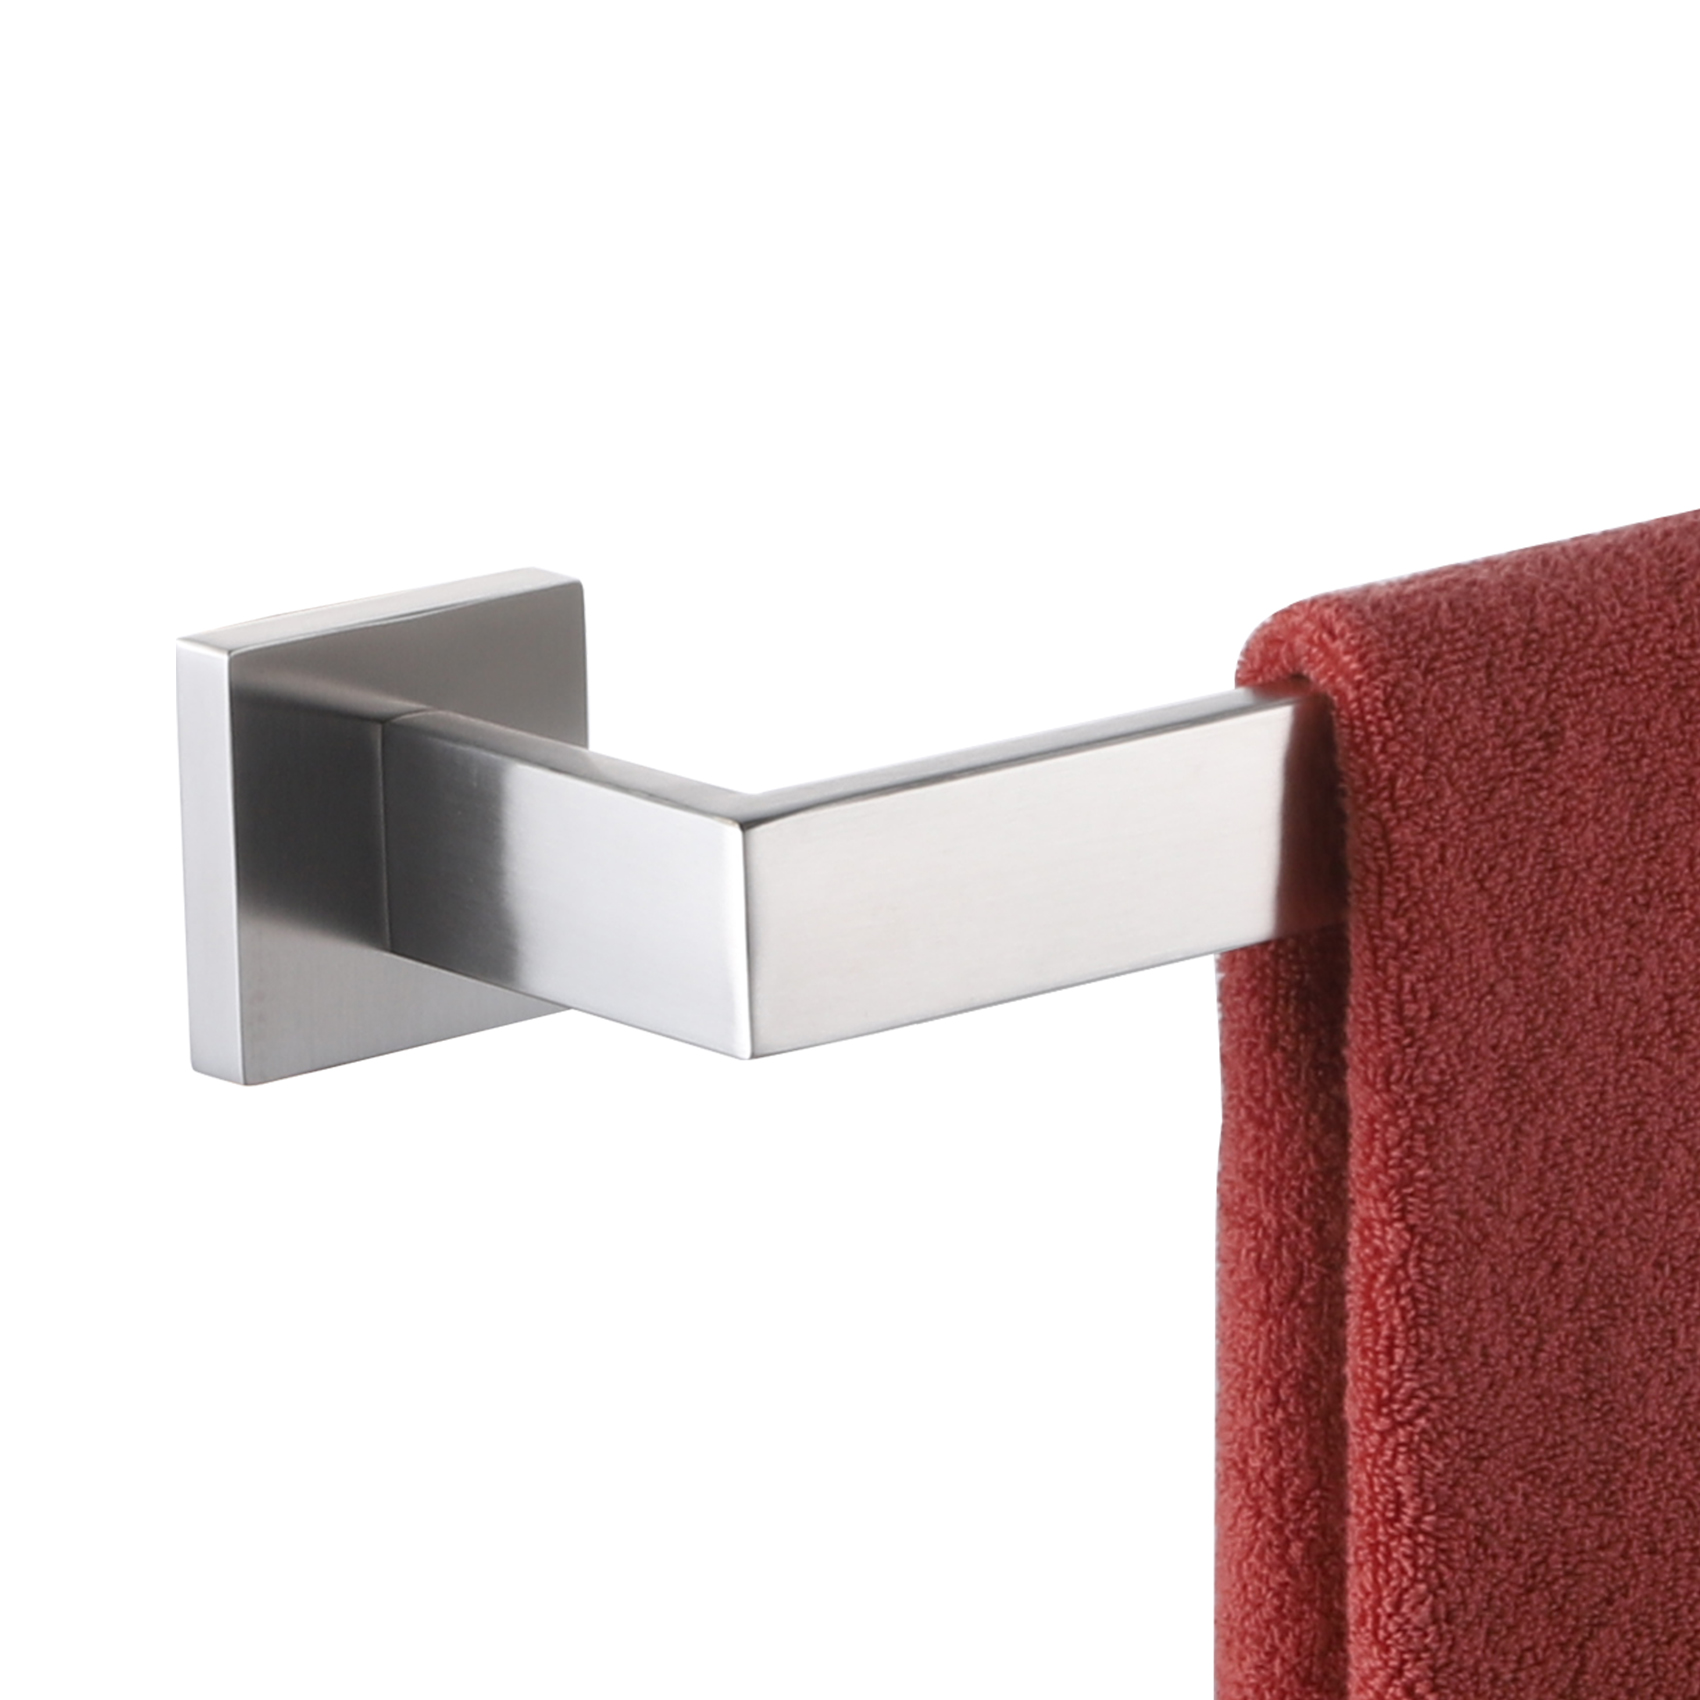 KOKOSIRI 24-Inch Single Towel Bar, Bathroom Kitchen Towel Holder